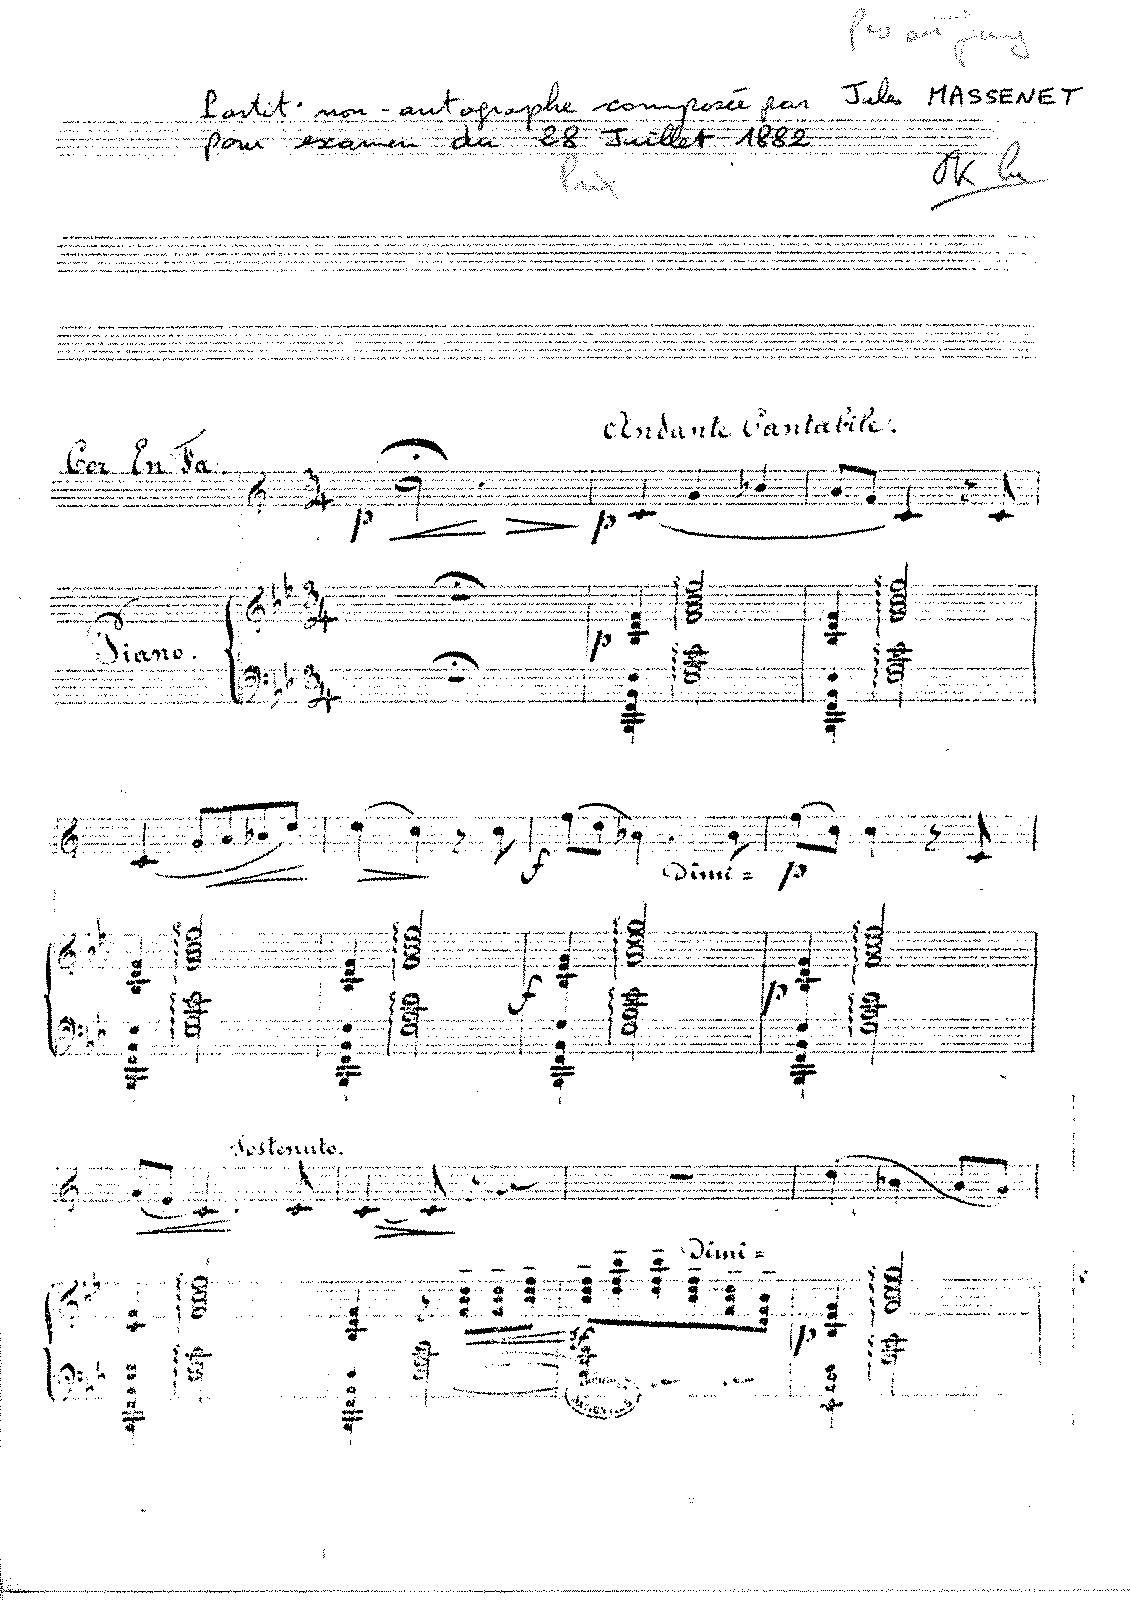 chopin cantabile in b flat major sheet music